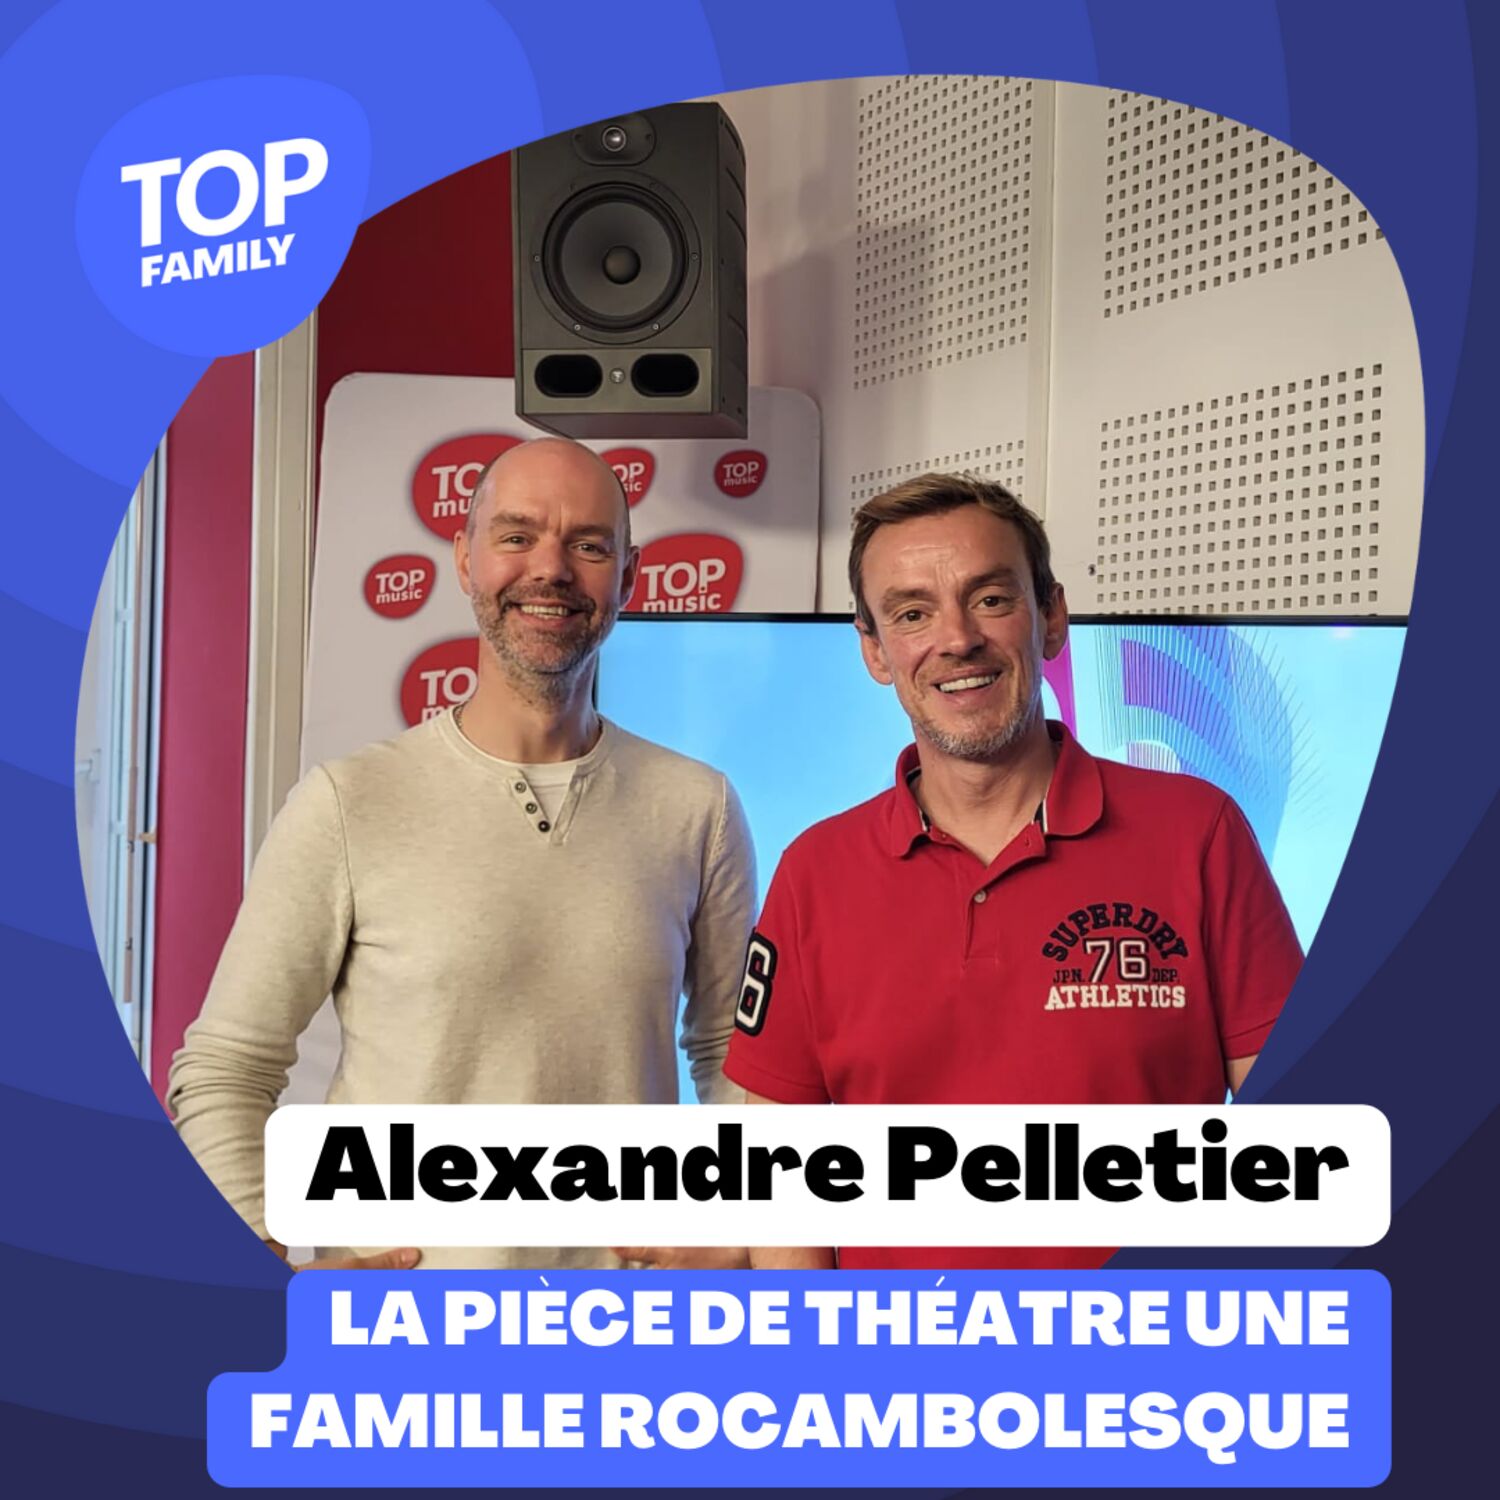 Alexandre Pelletier de la pièce de théâtre une famille rocambolesque !